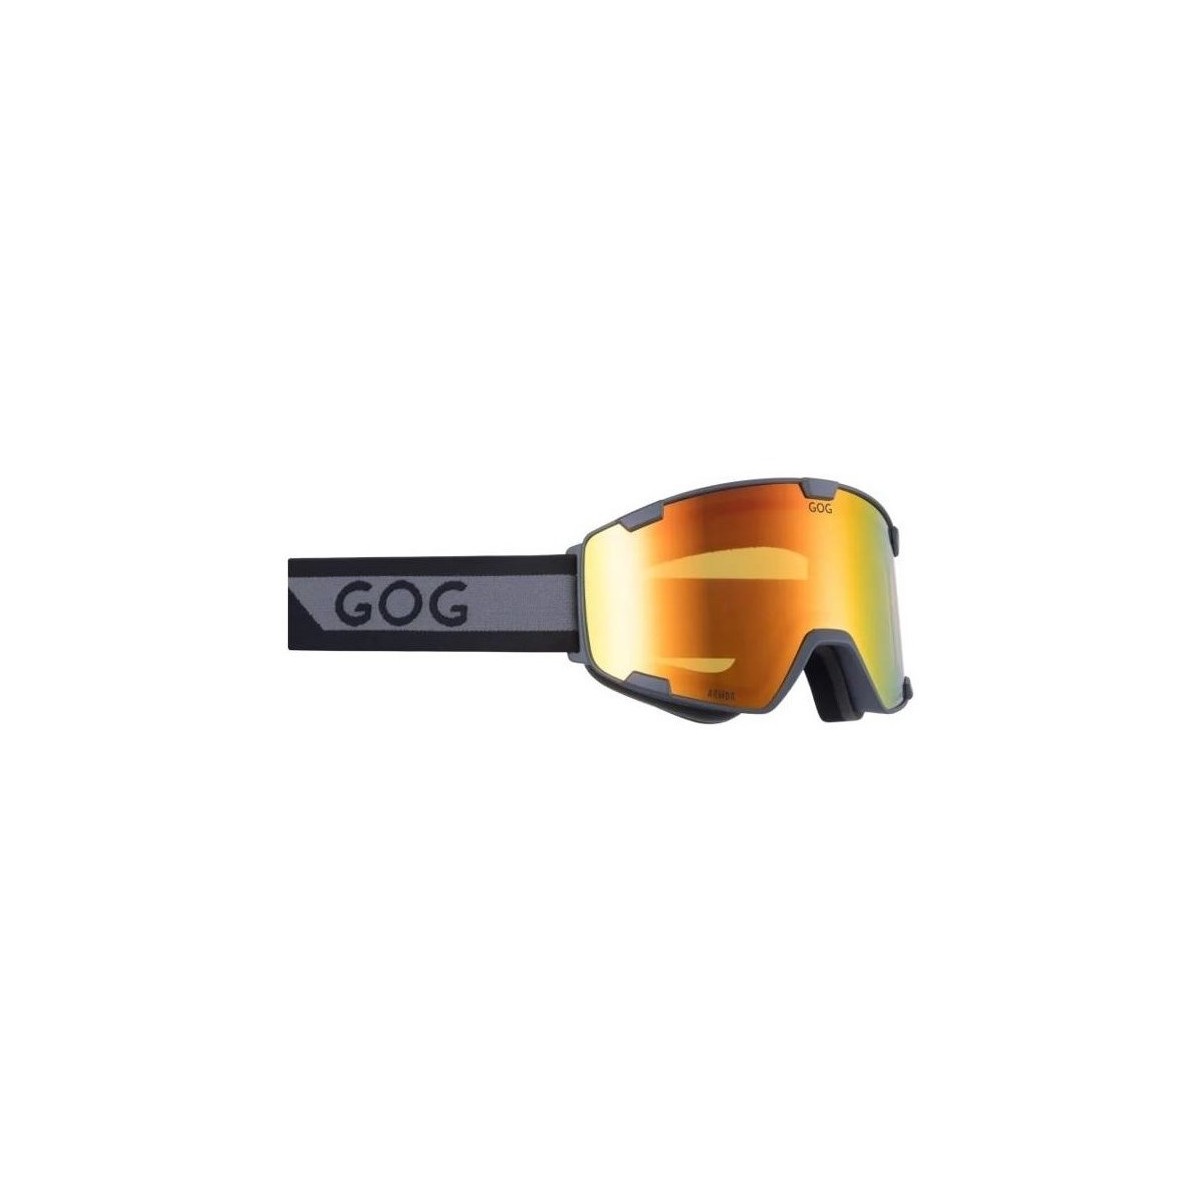 Doplňky  Sportovní doplňky Goggle Armor Šedé, Černé, Oranžové